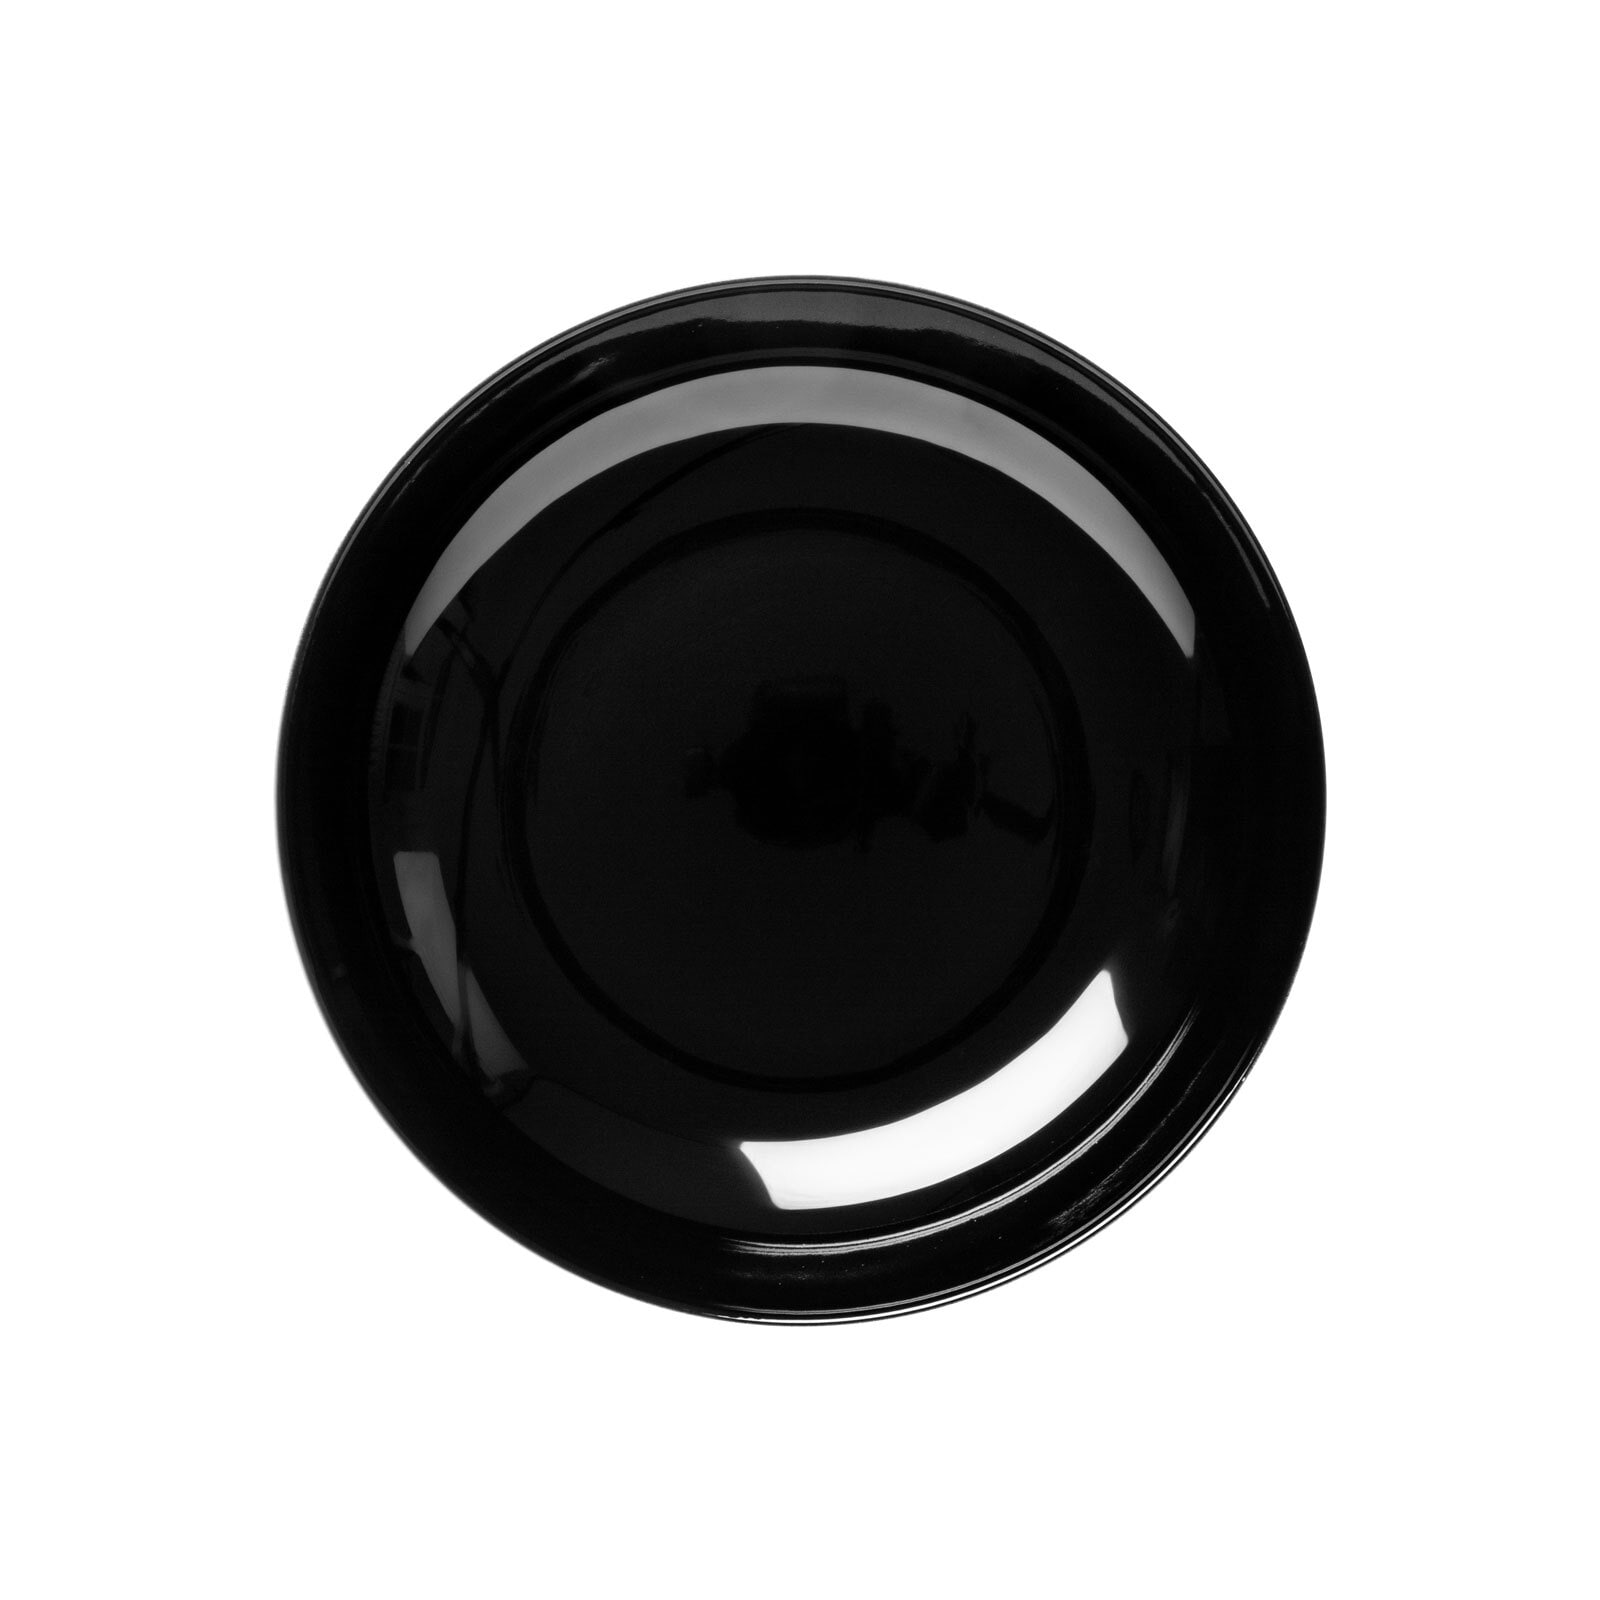 Seltmann Weiden Tafelservice LIDO SOLID BLACK 12-teilig schwarz/ weiß